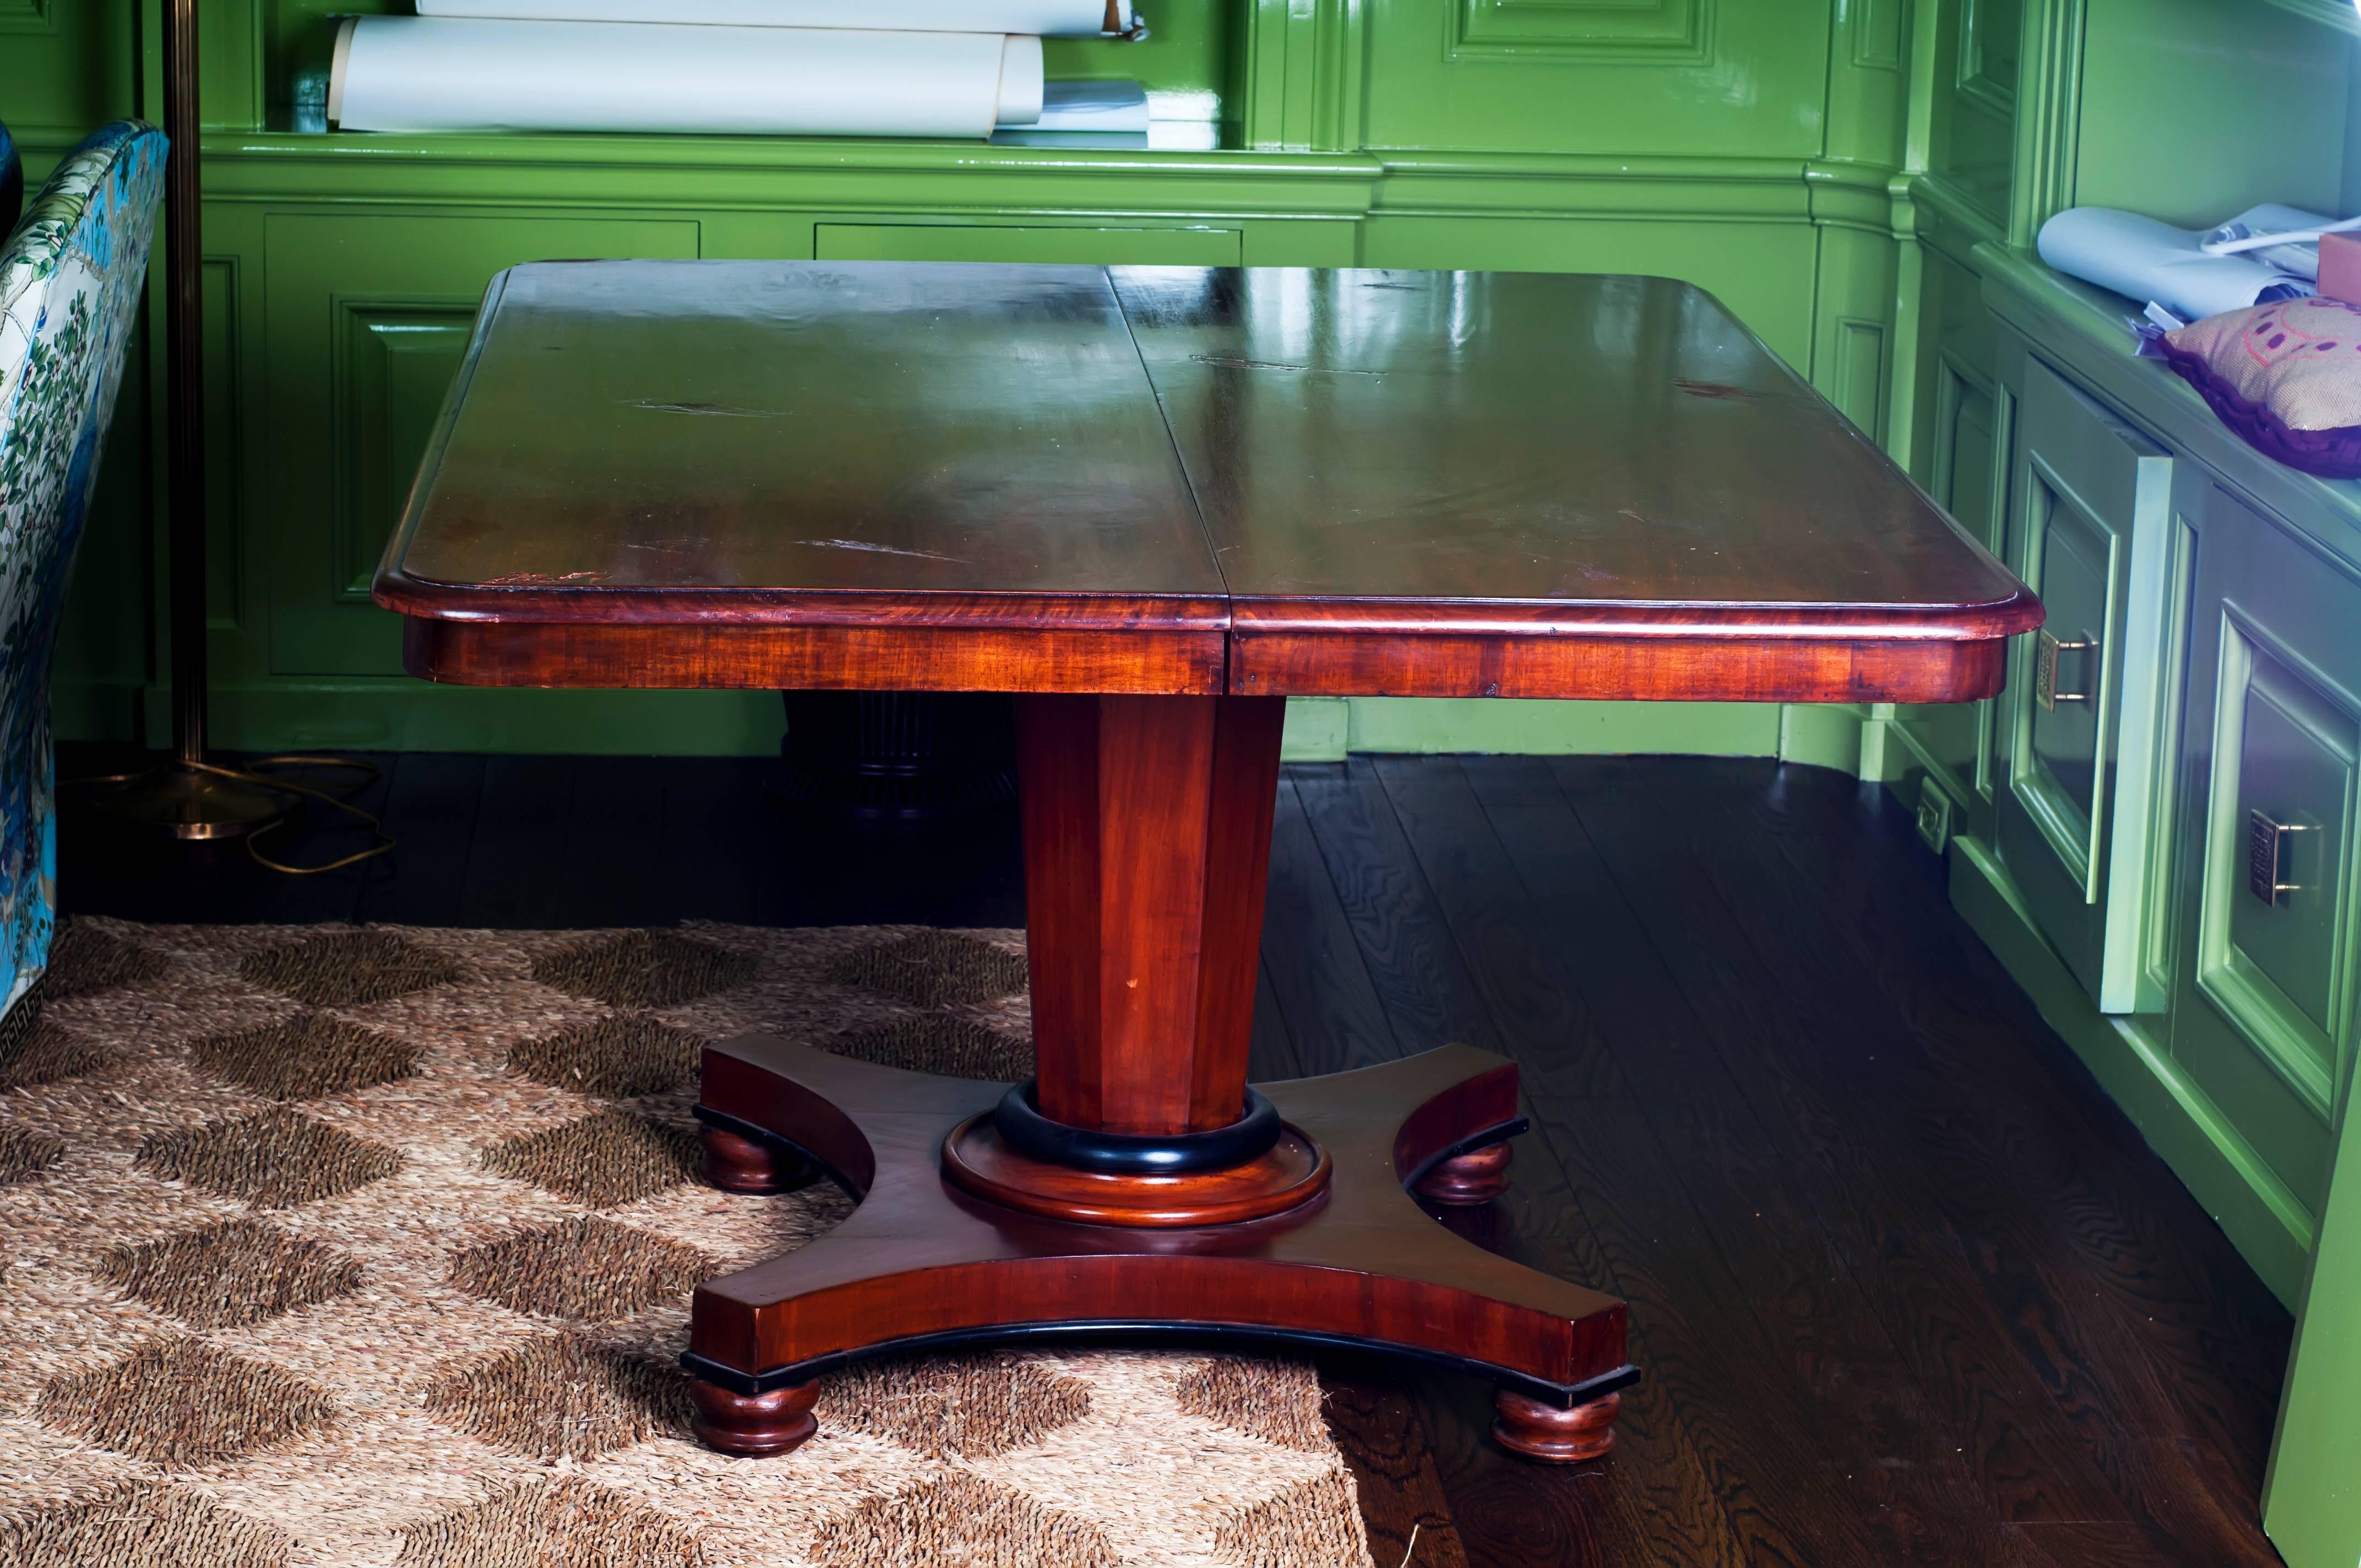 Table de salle à manger à piédestal antique de style Regency avec une feuille.

La feuille mesure : 24